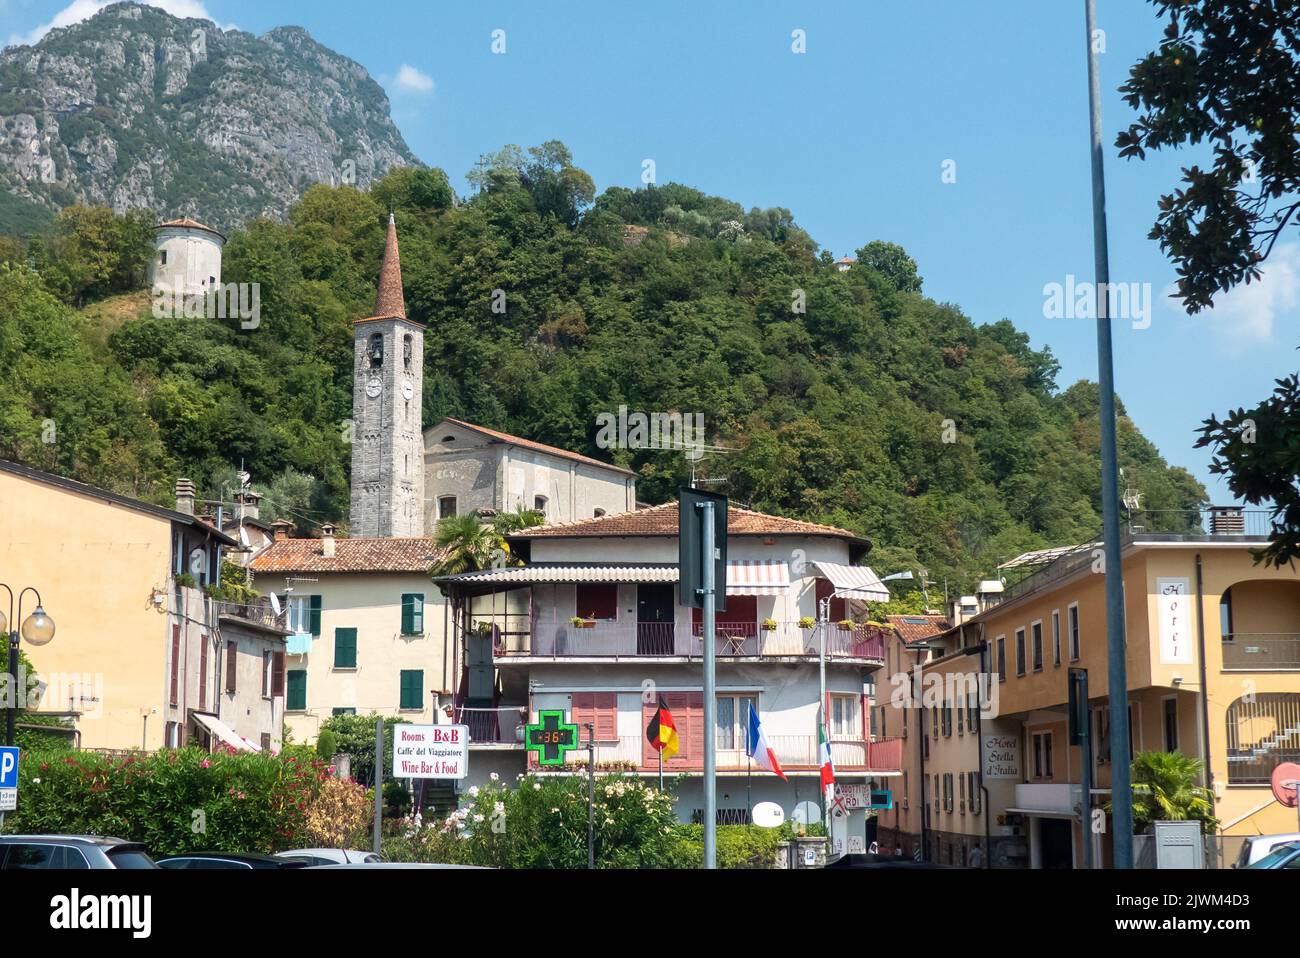 Côme, Italie : la commune de San Mamete sur le lac de Lugano. Banque D'Images